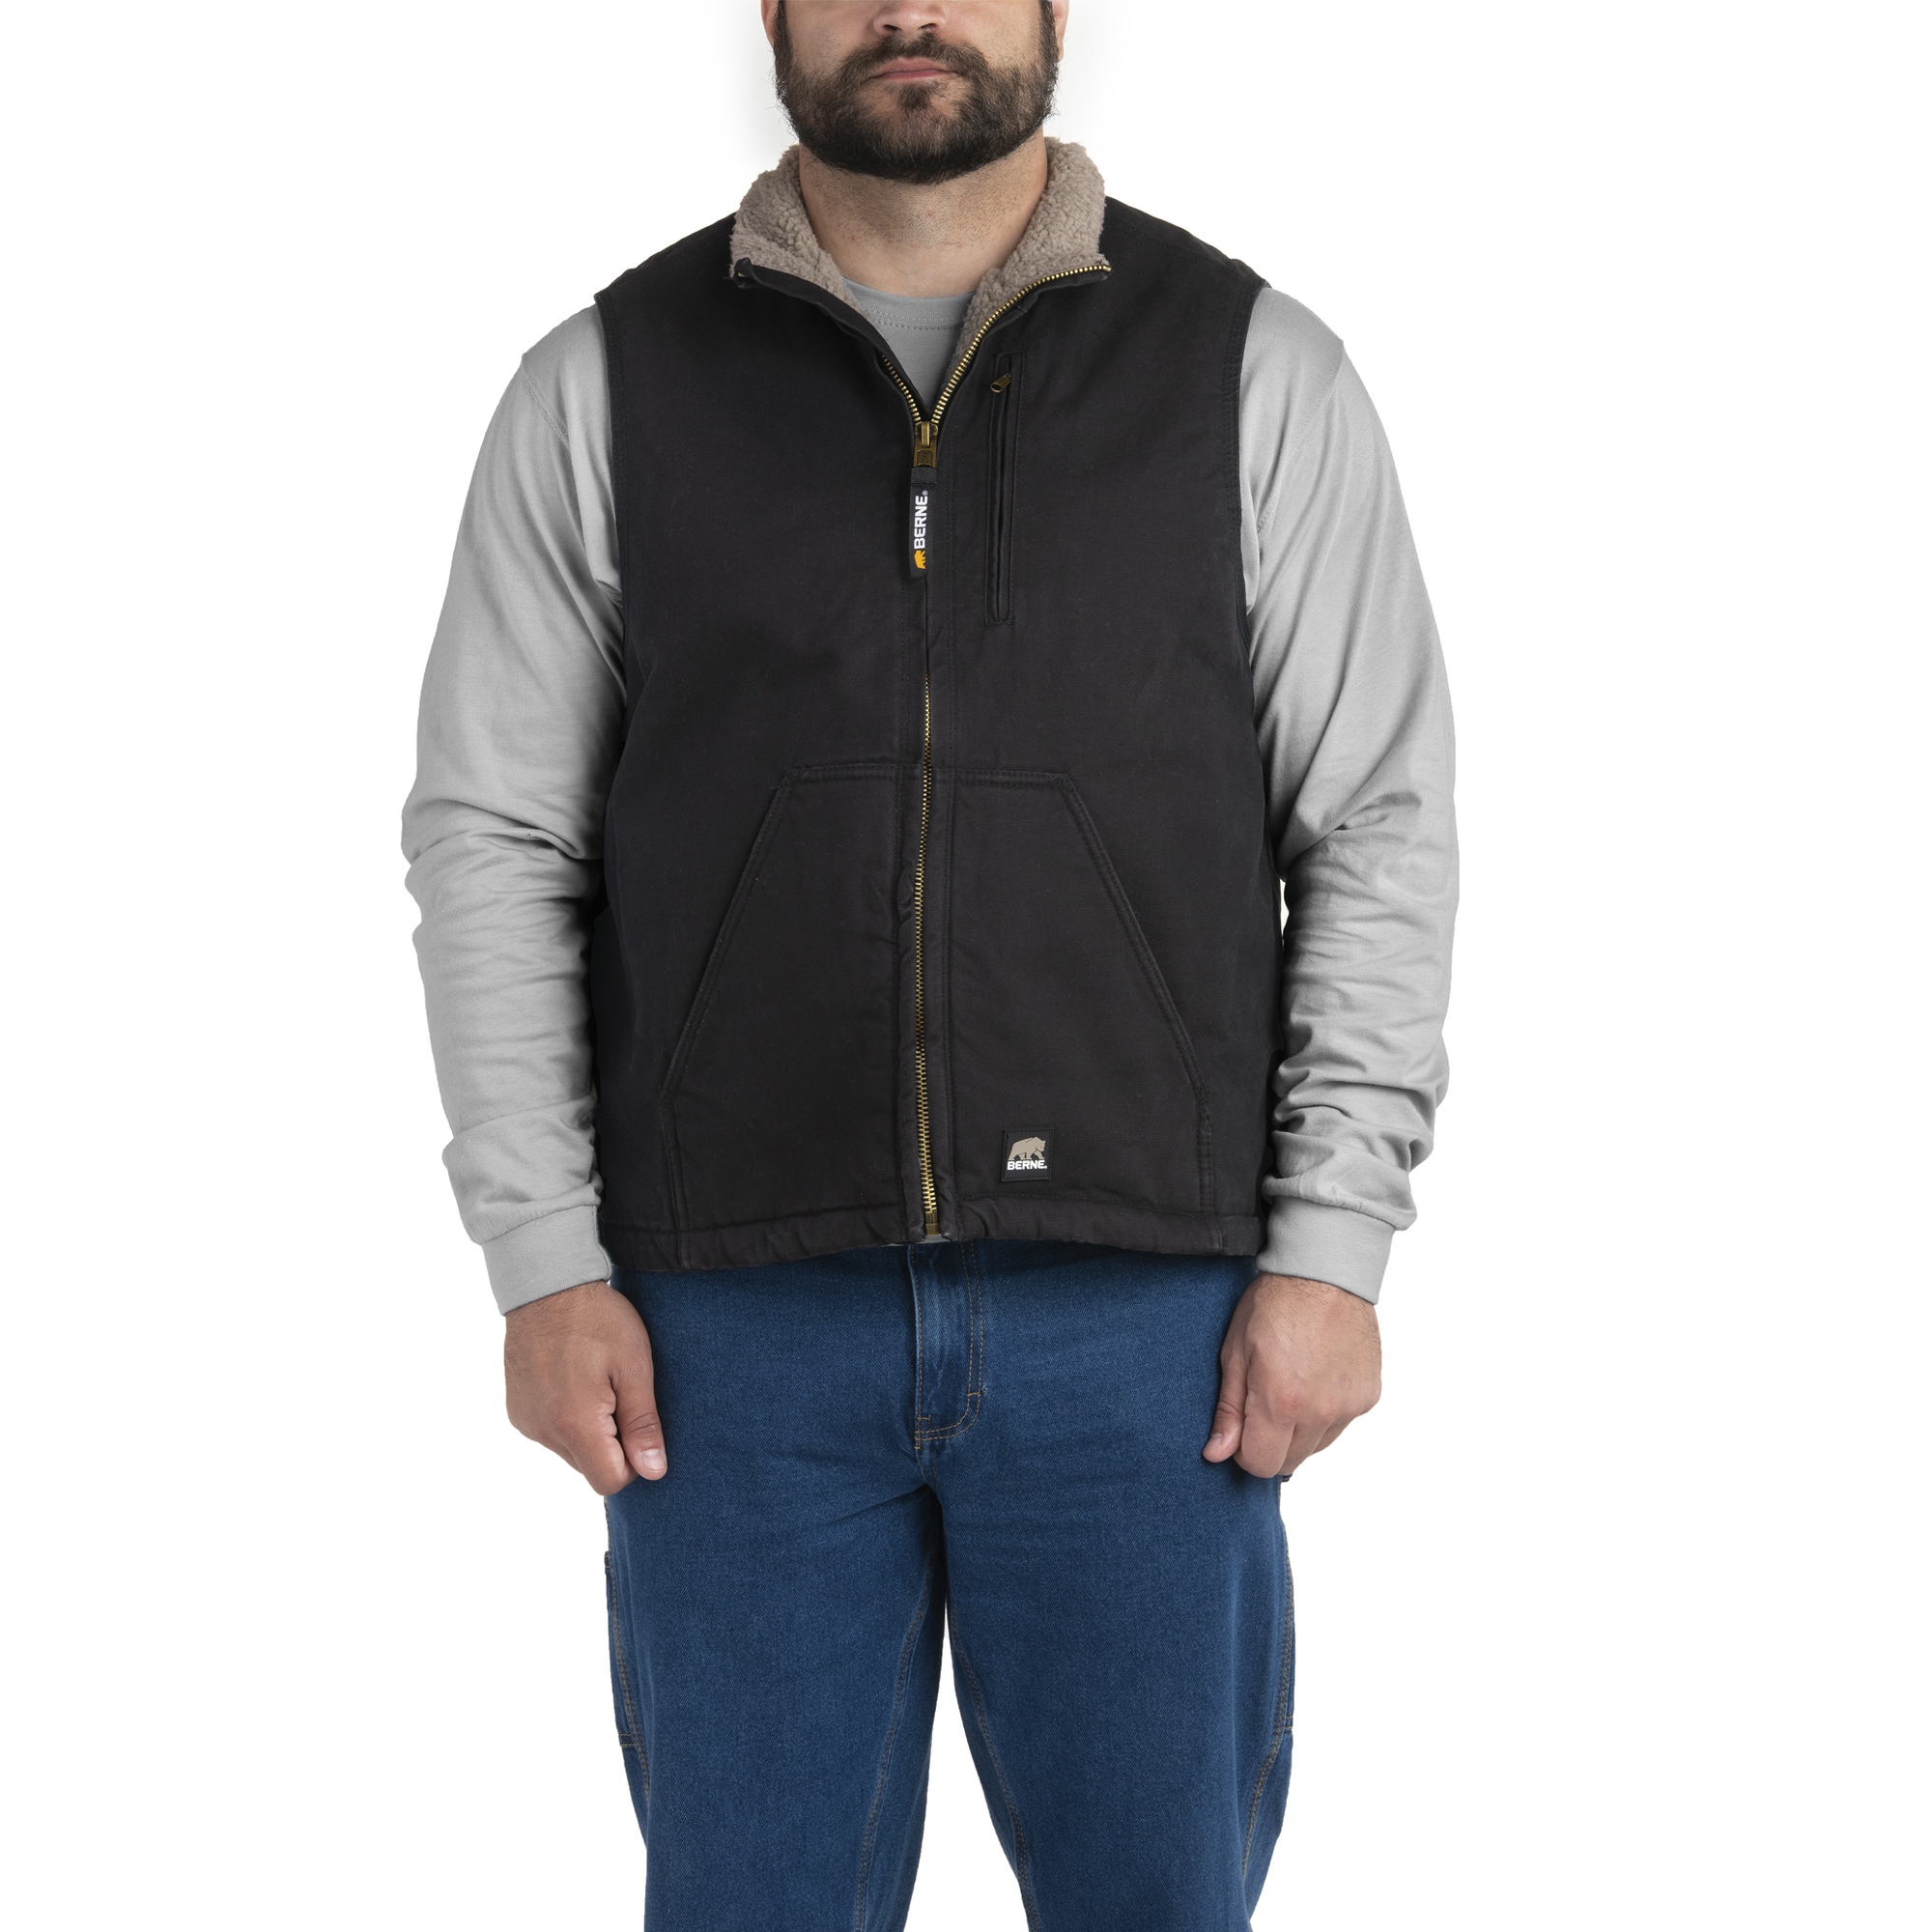 Berne Apparel, Canyon Sherpa Lined Vest, Size 4XL, Color Black, Model V818